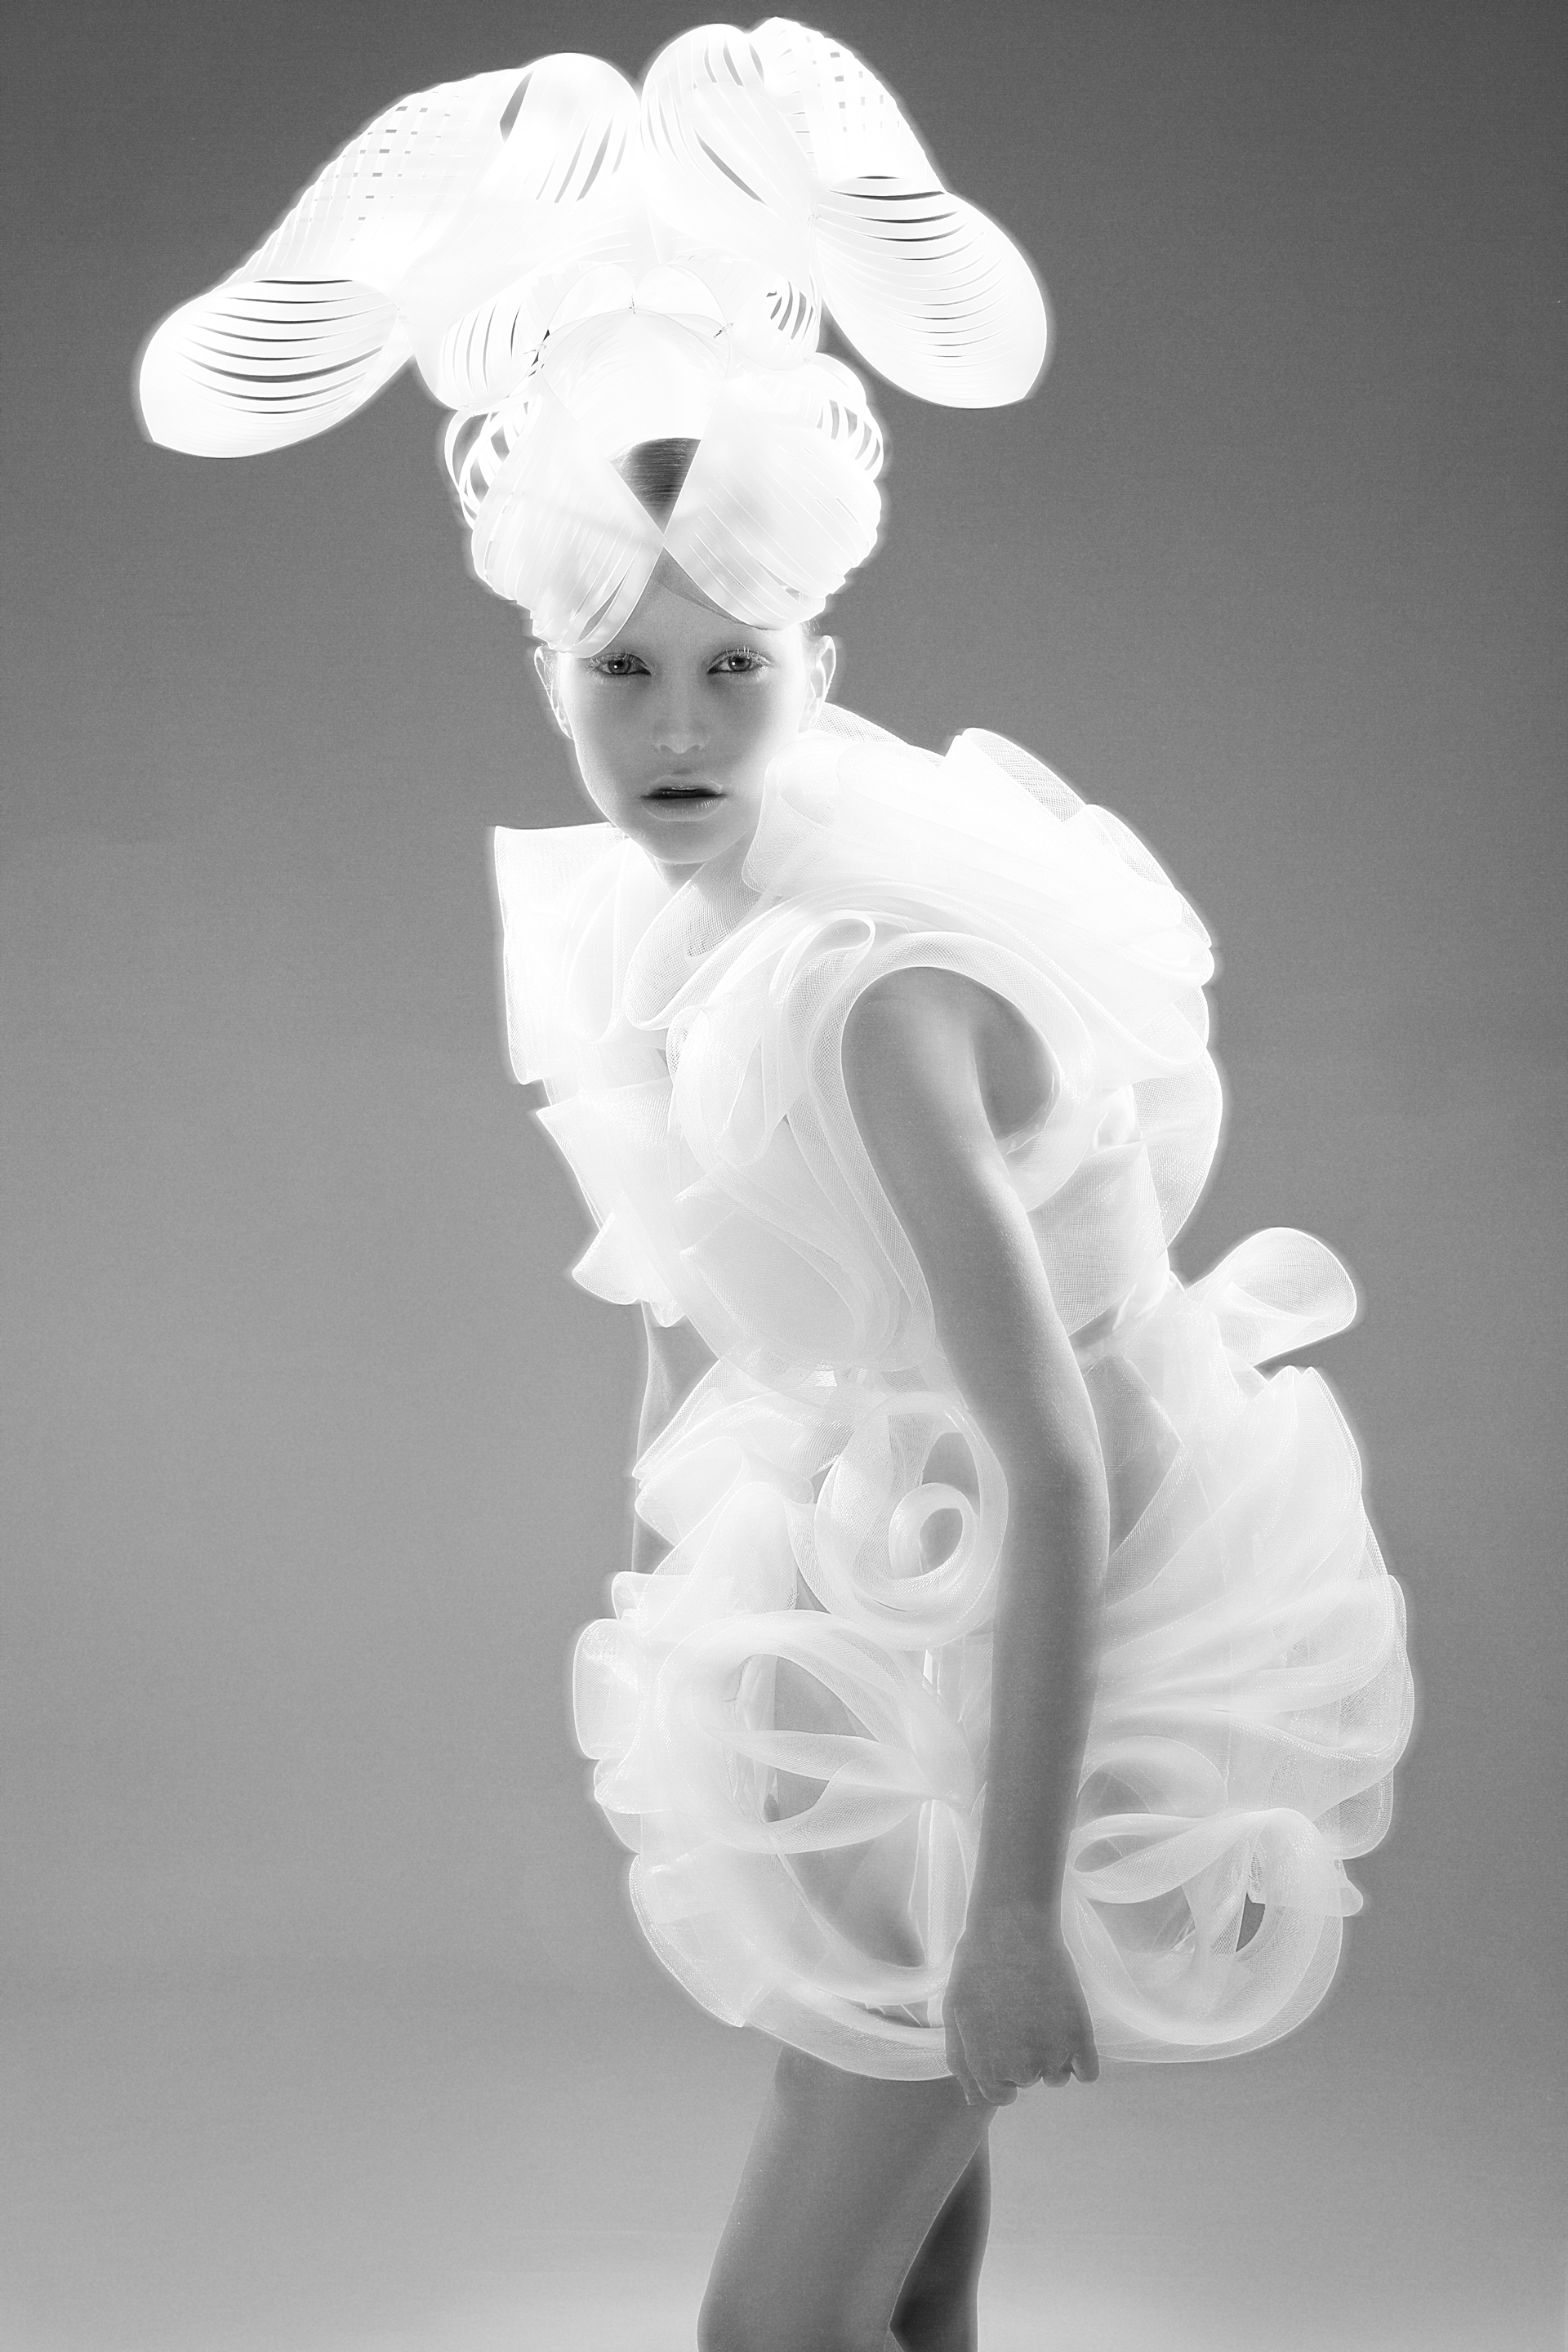 Auf der Modefotogarfie ist einen Model einem weißen, sklupturalen Kleid zu sehen. Auf dem Kopf trägt das Mädchen einen ausladenden, weißen Hut. Designer: Tanel Veenre. Foto: Woland. Buch: Otherworldly. © Gestalten 2016